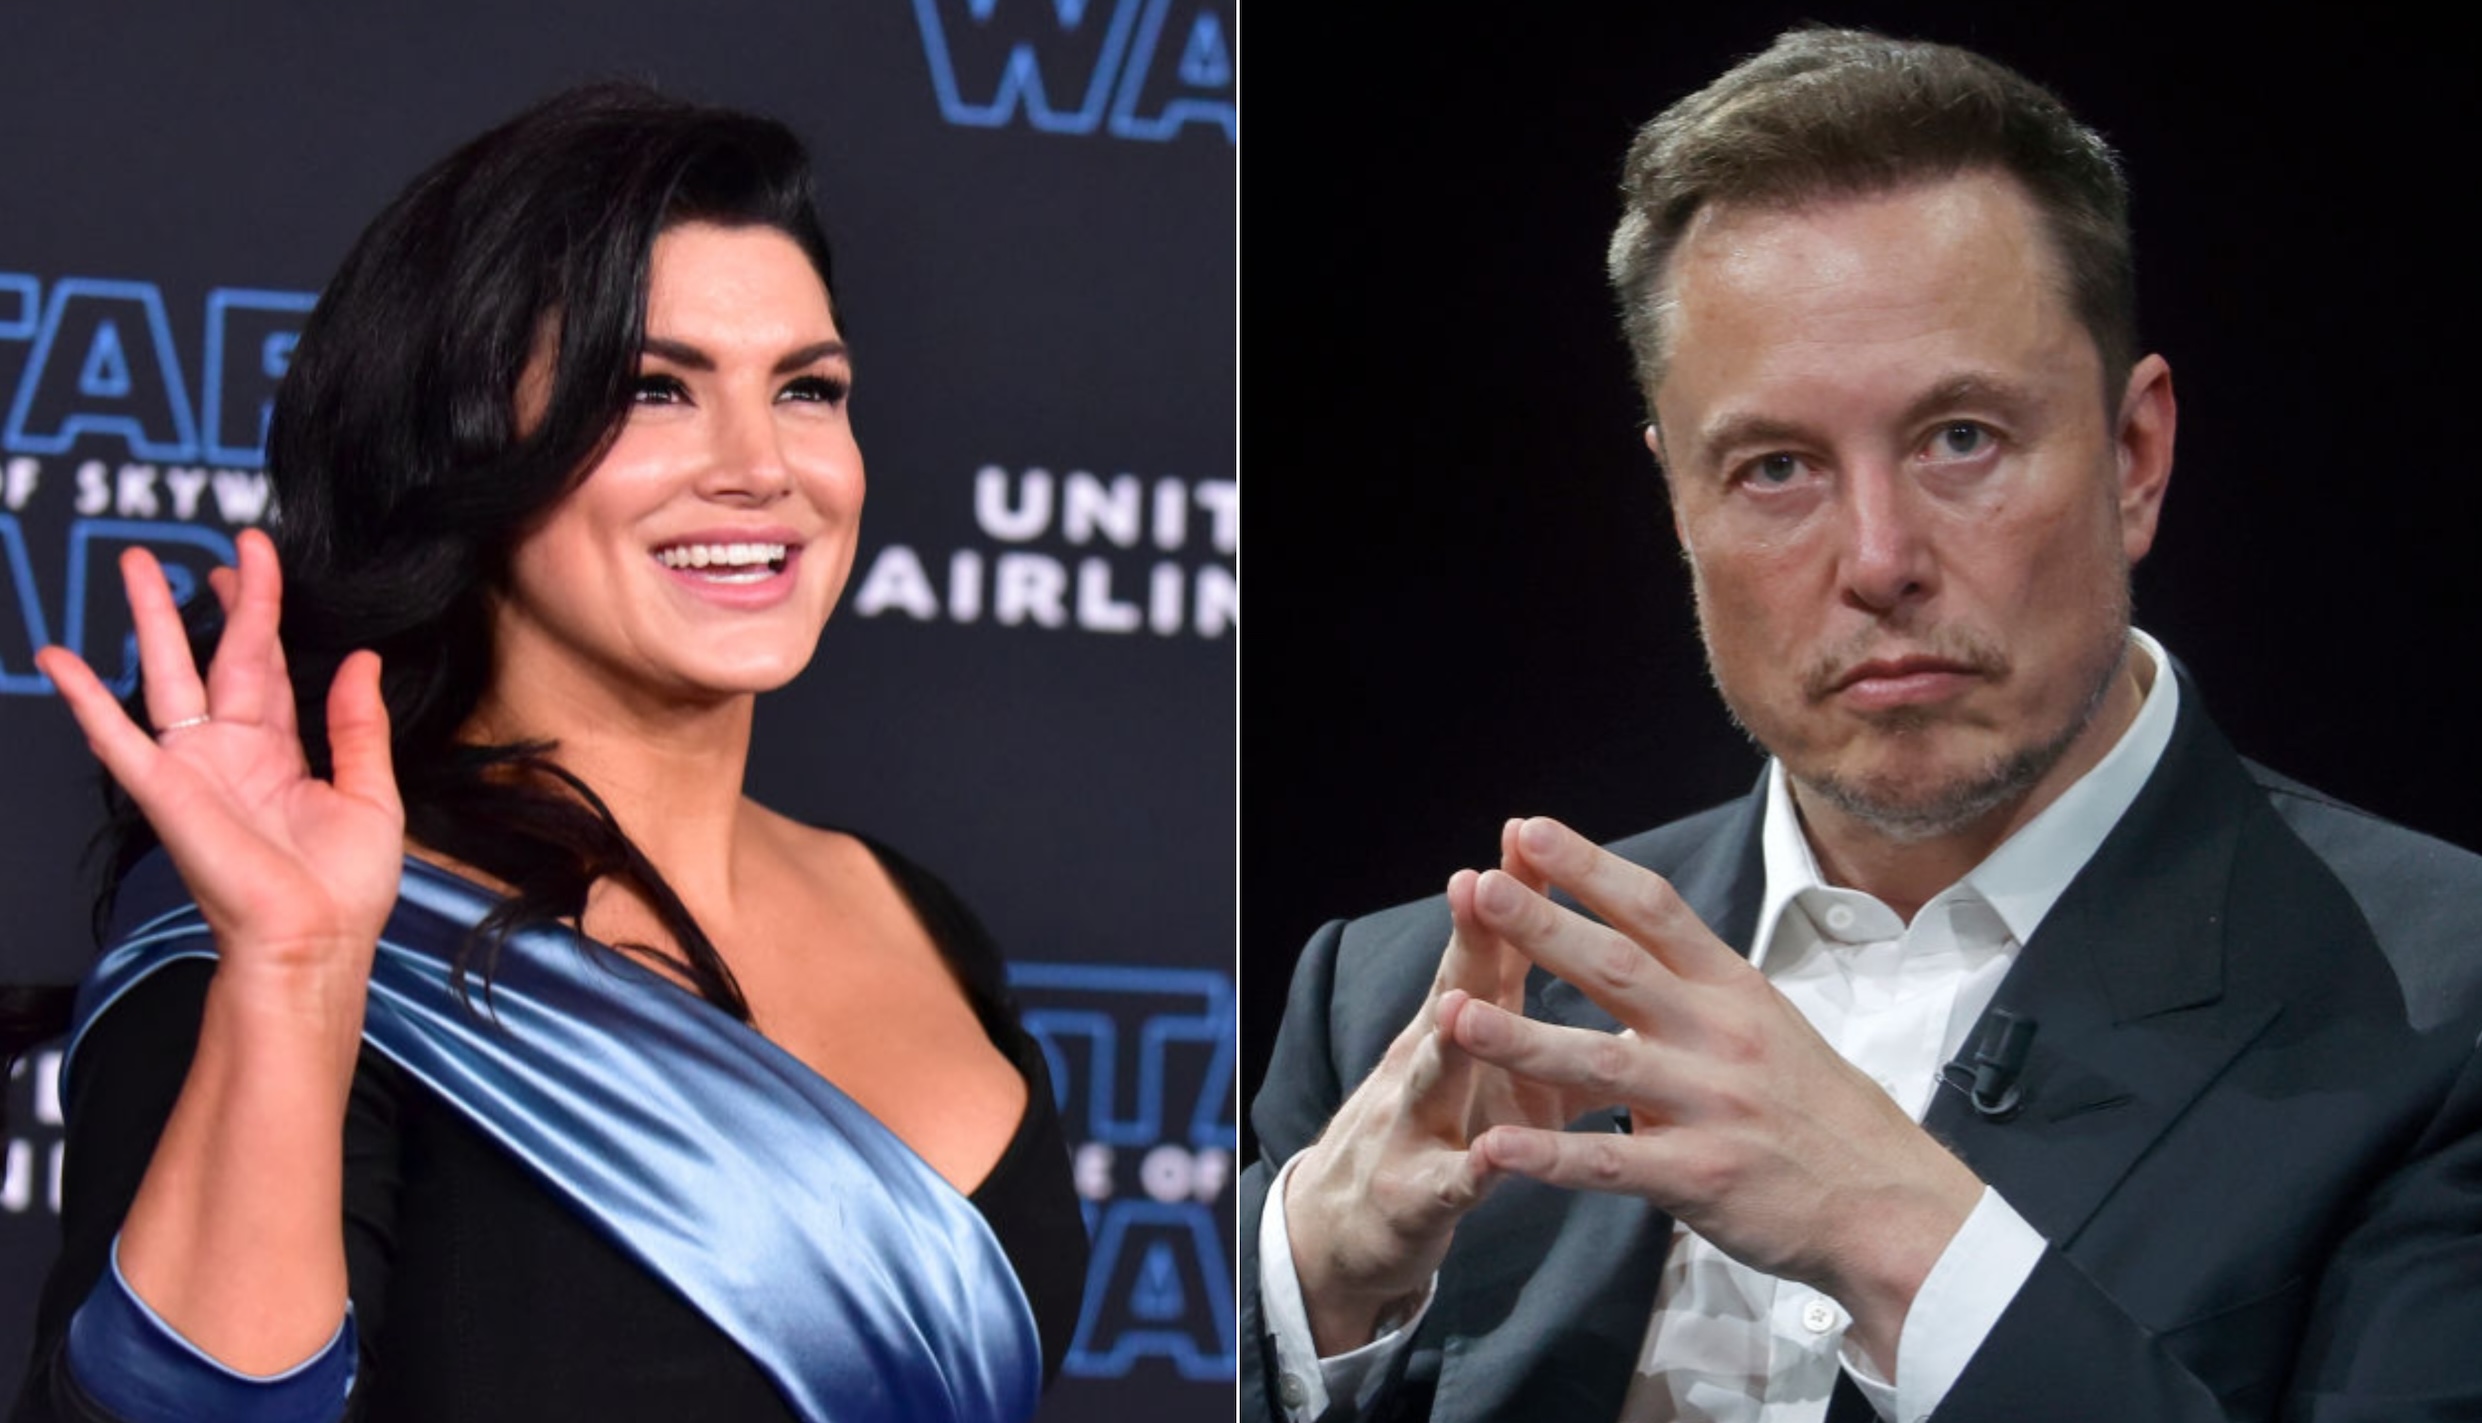 Gina and Elon defy Hollywood’s power